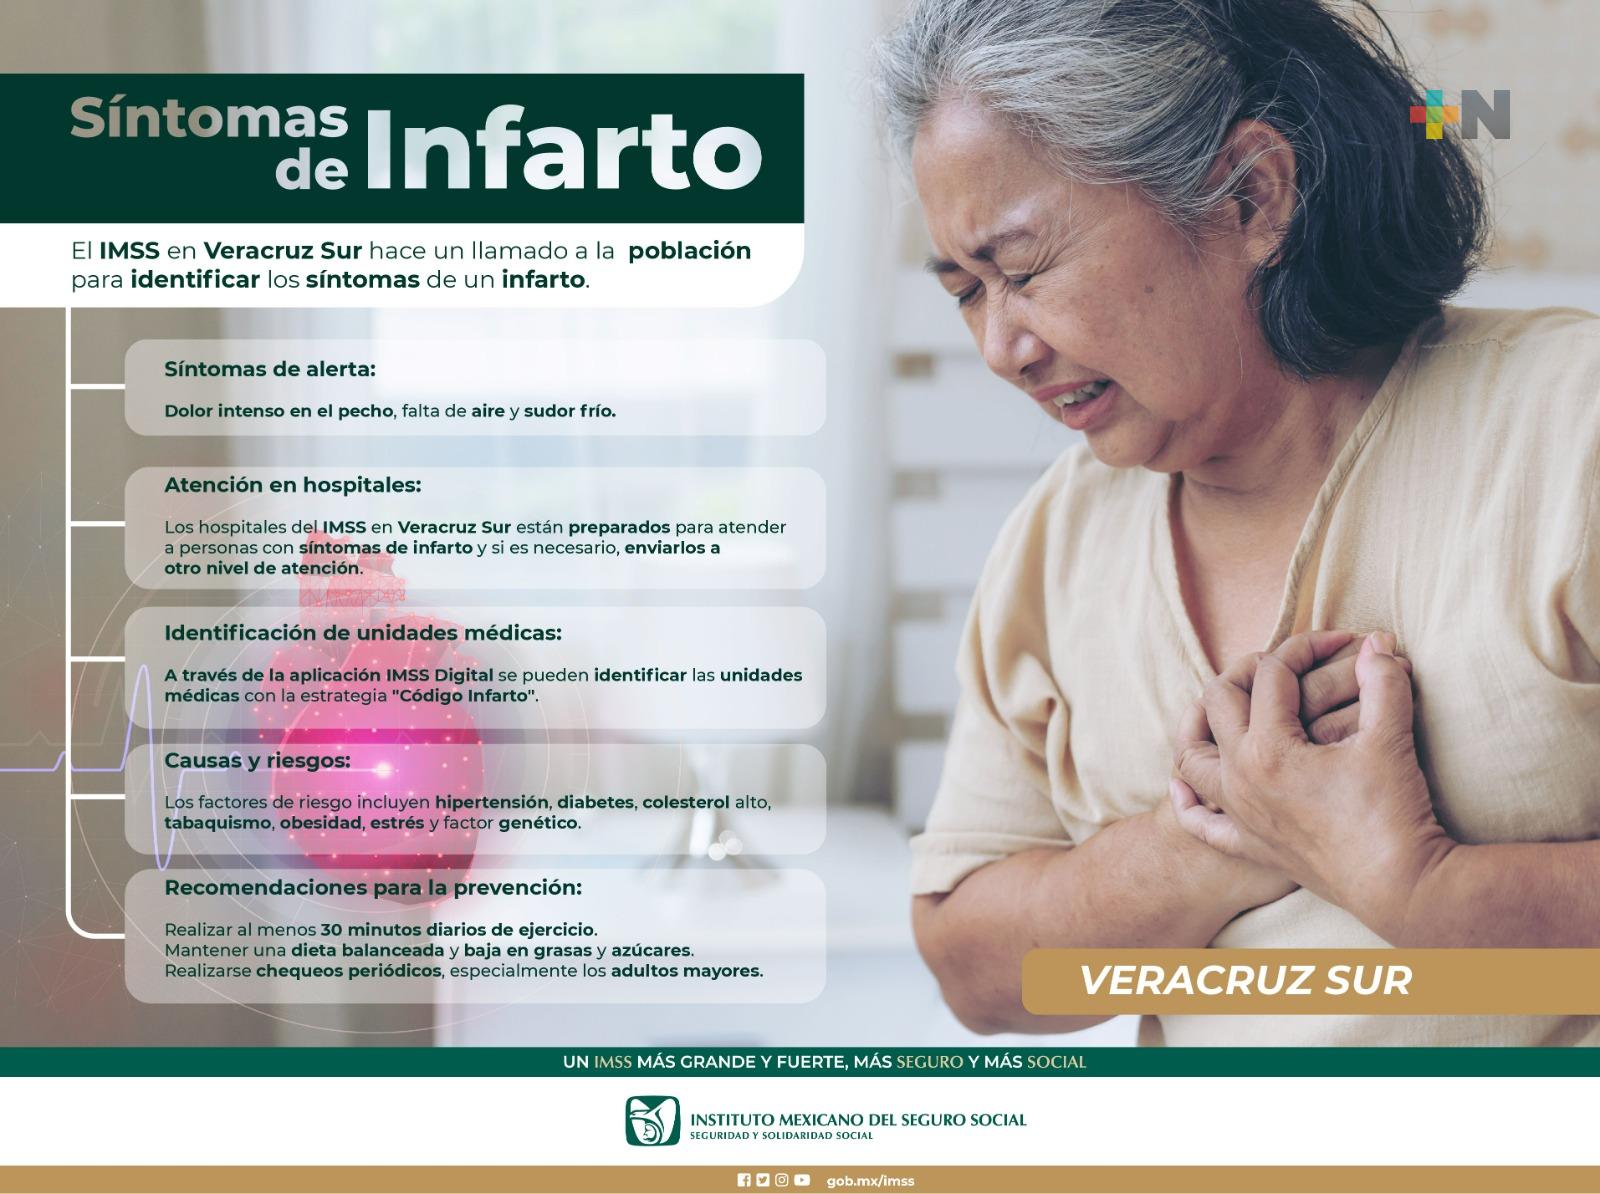 Advierte IMSS Veracruz Sur sobre síntomas de infarto